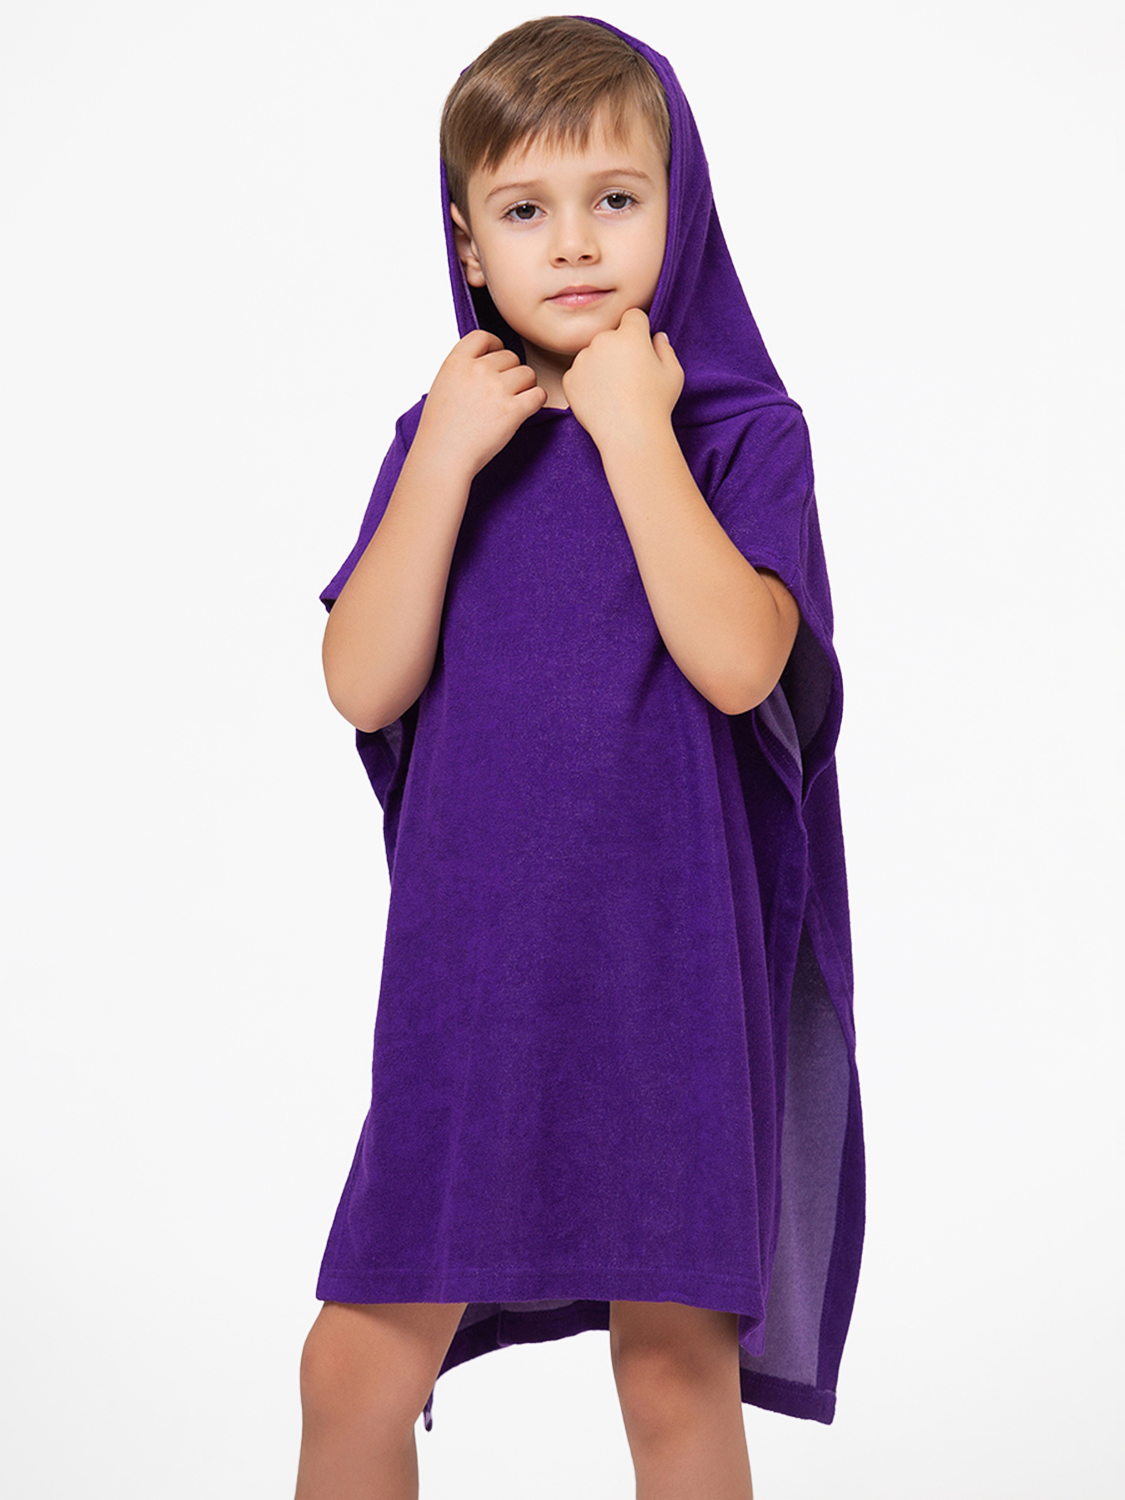 Полотенце детское HappyFox пончно HFG2019 размер 61x52 см, фиолетовый